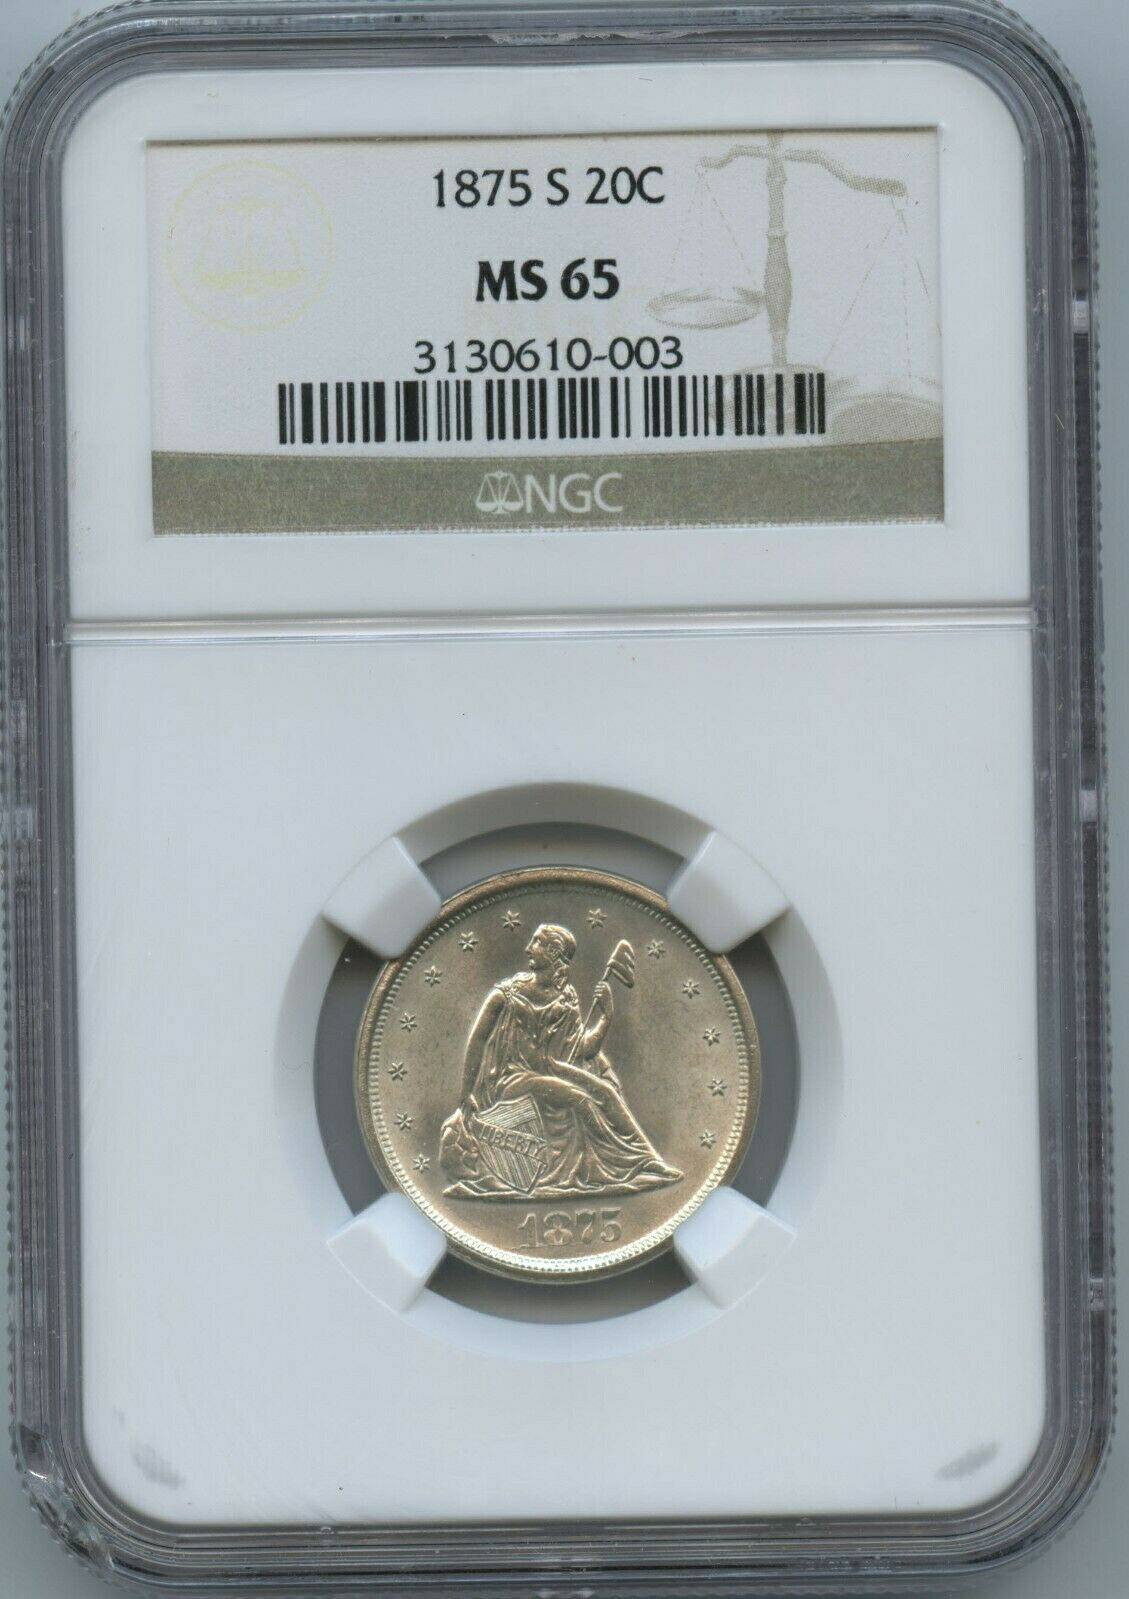 【極美品/品質保証書付】 アンティークコイン 硬貨 1875 S 20 Cent NGC MS 65 Super White and Absolutely the Perfect Type Coin!! [送料無料] #oct-wr-011201-17533